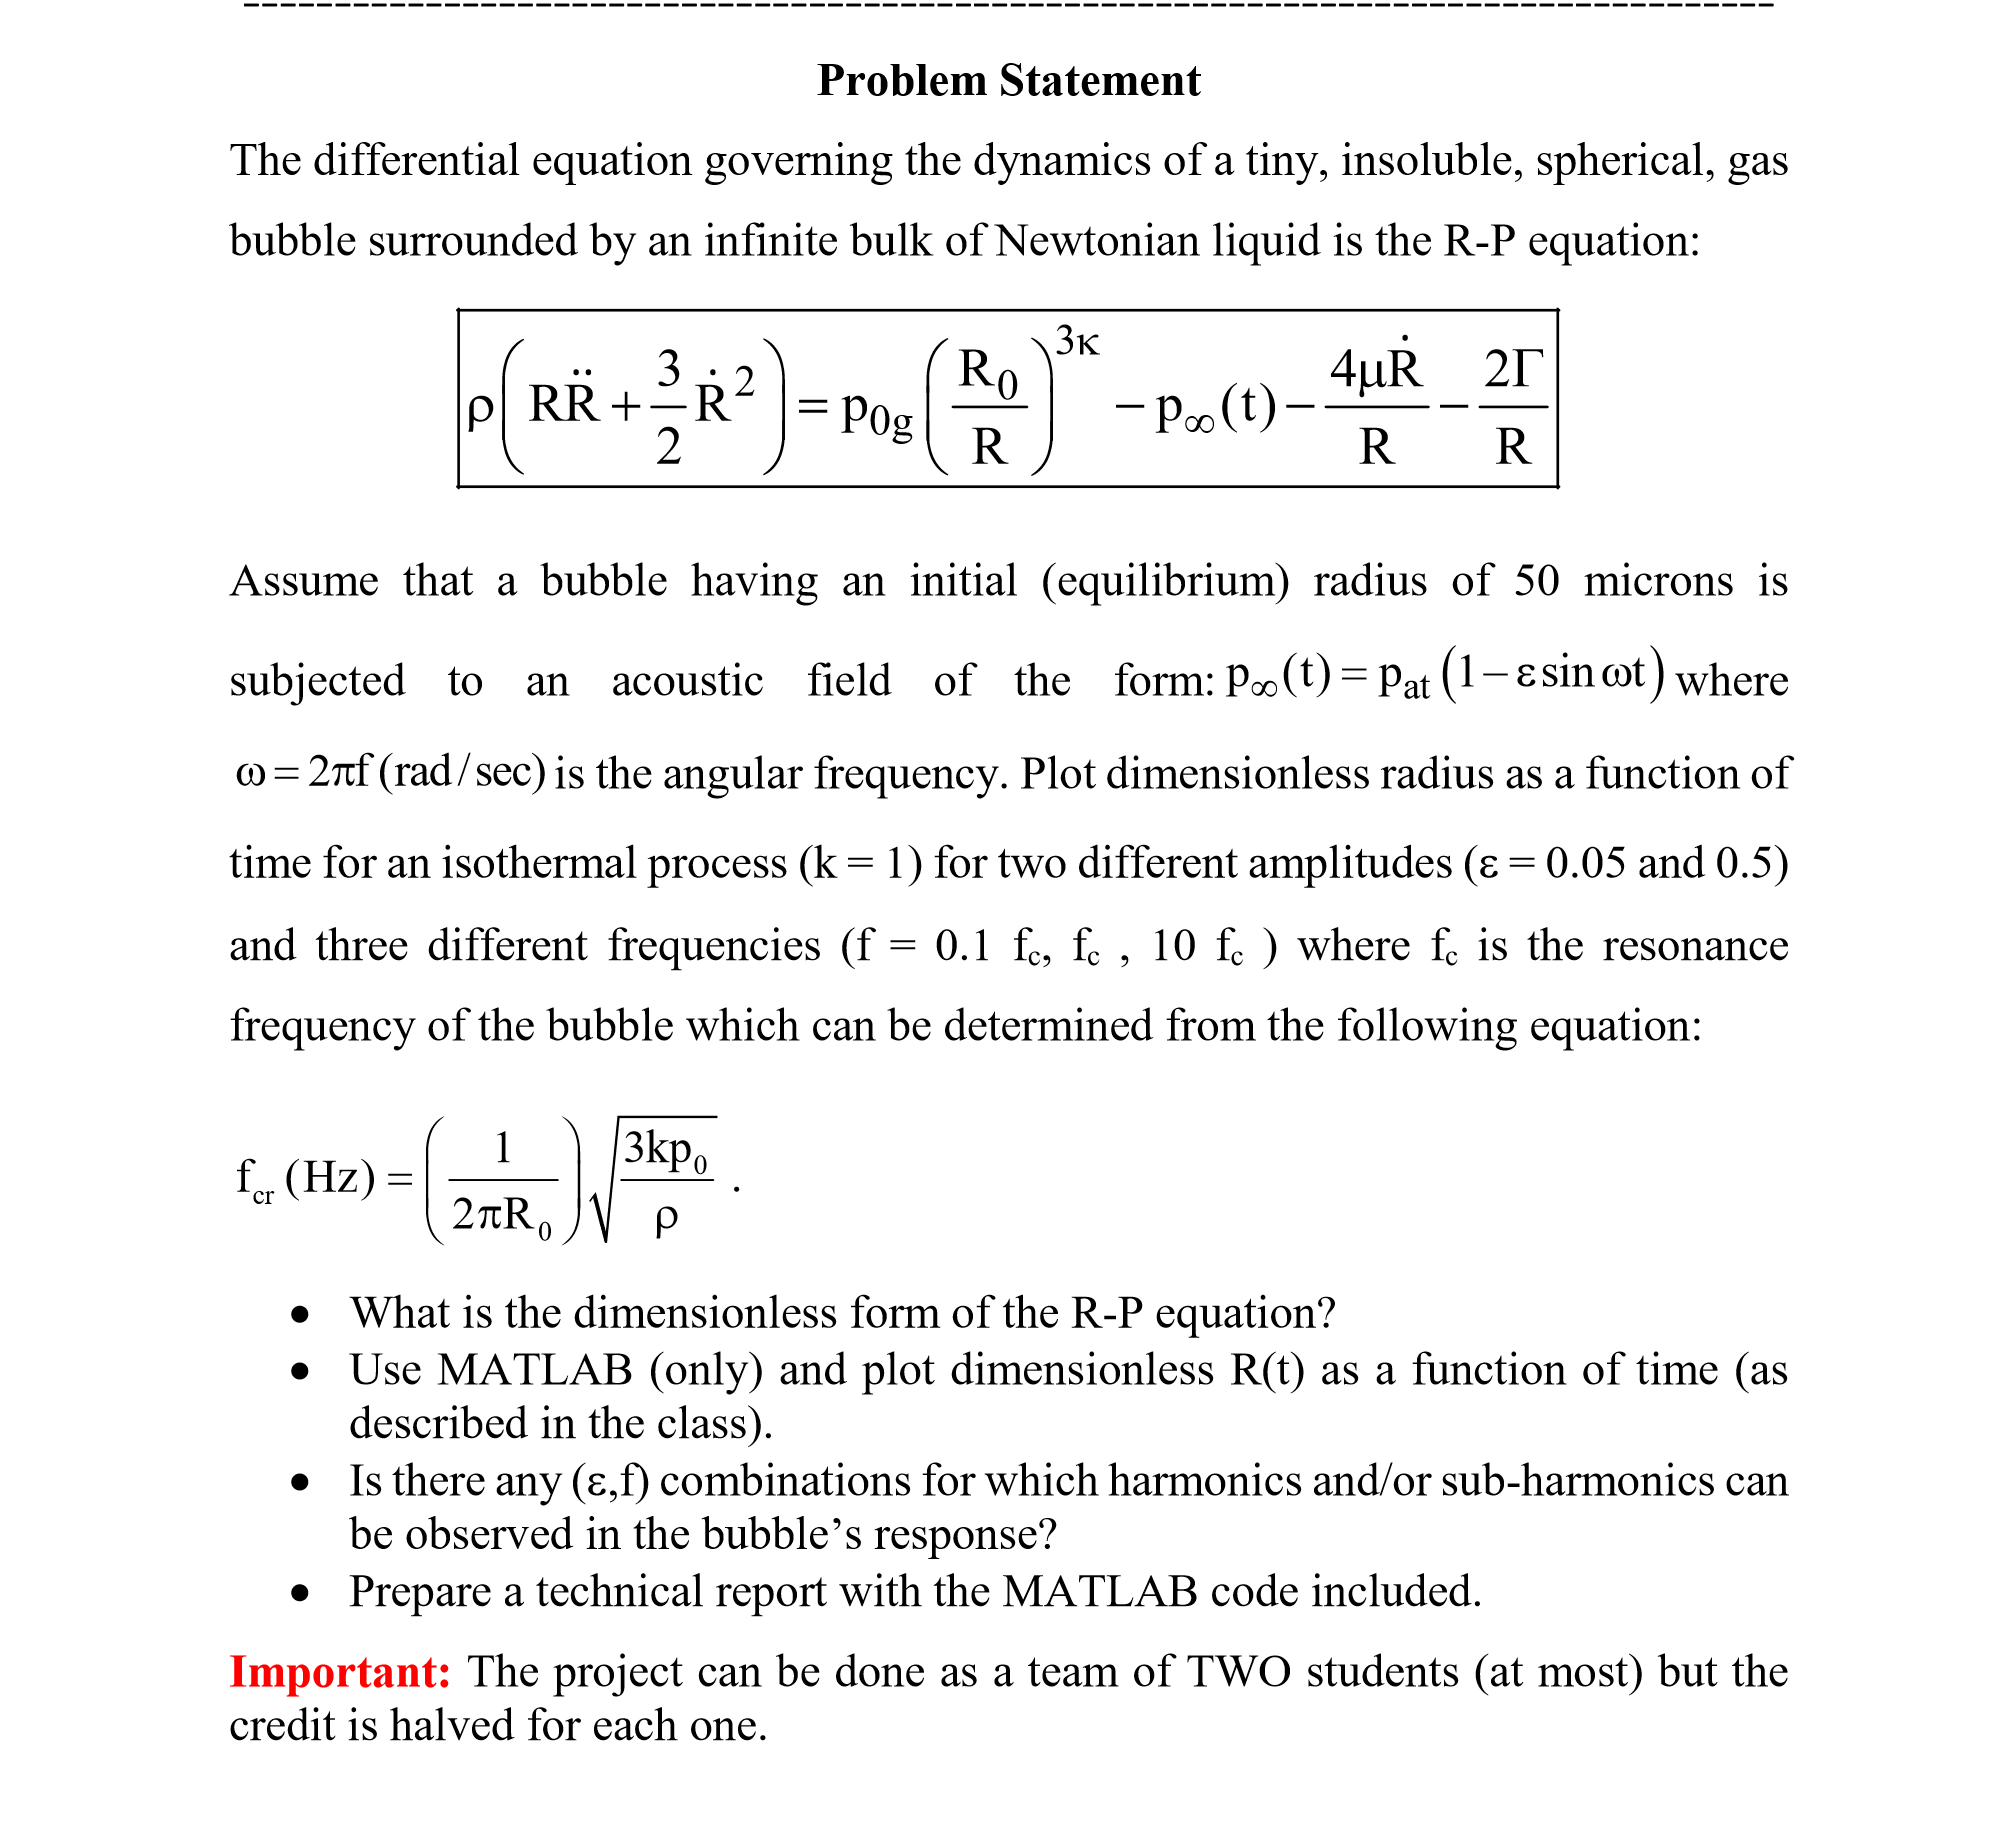 شبیه سازی معادله دیفرانسیل معمولی غیر خطی است با روش رانج کوتاه مرتبه 4 با نرم افزار متلب